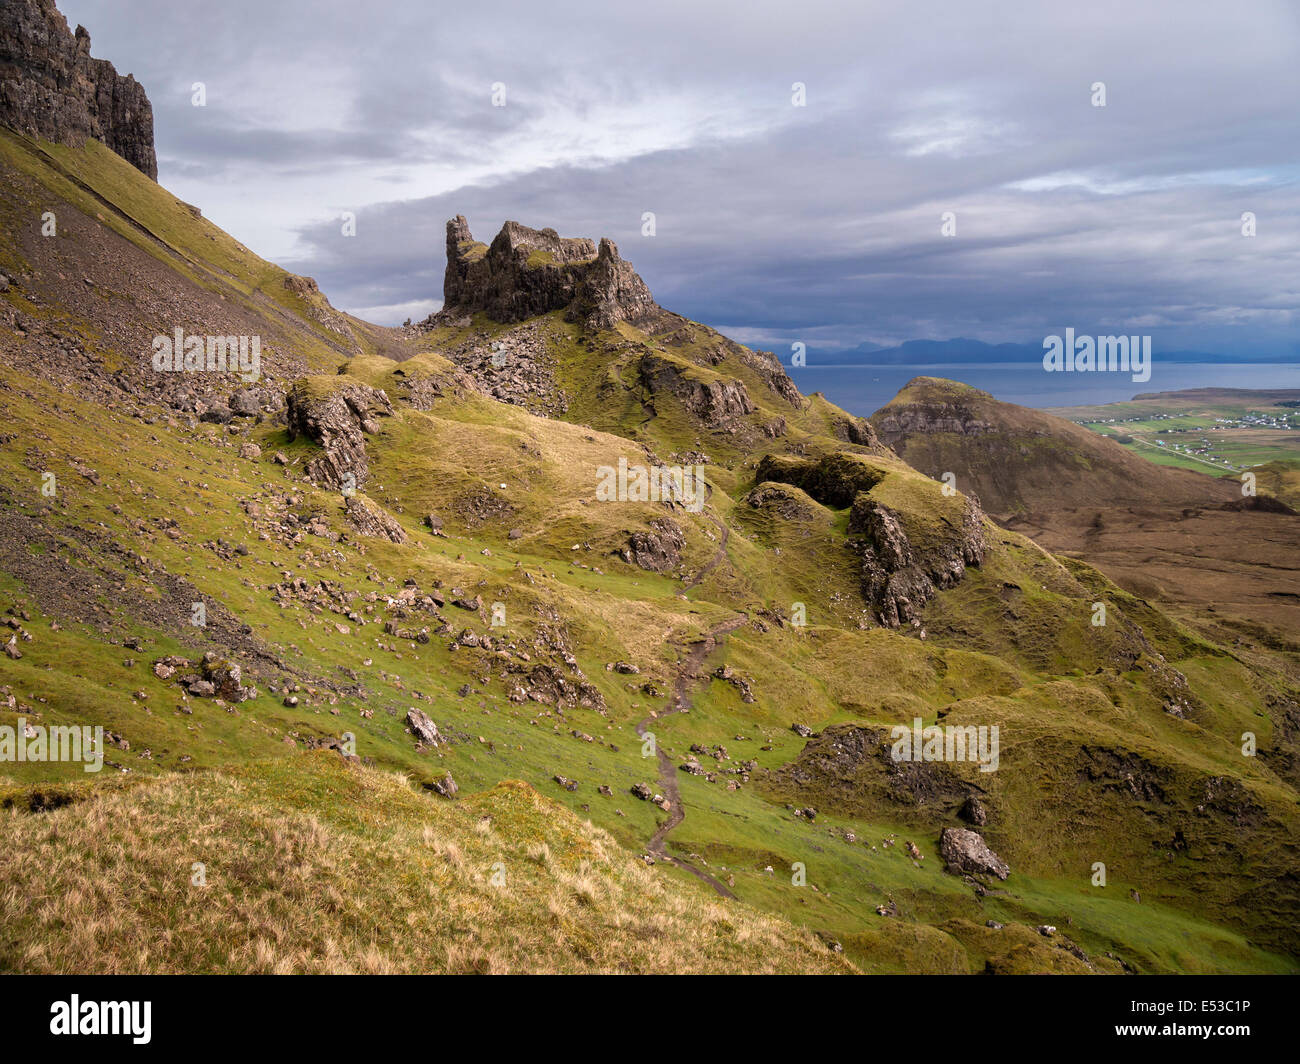 Les hautes falaises rocheuses de la 'prison' et quiraing, trotternish, Isle of Skye, Scotland, UK Banque D'Images